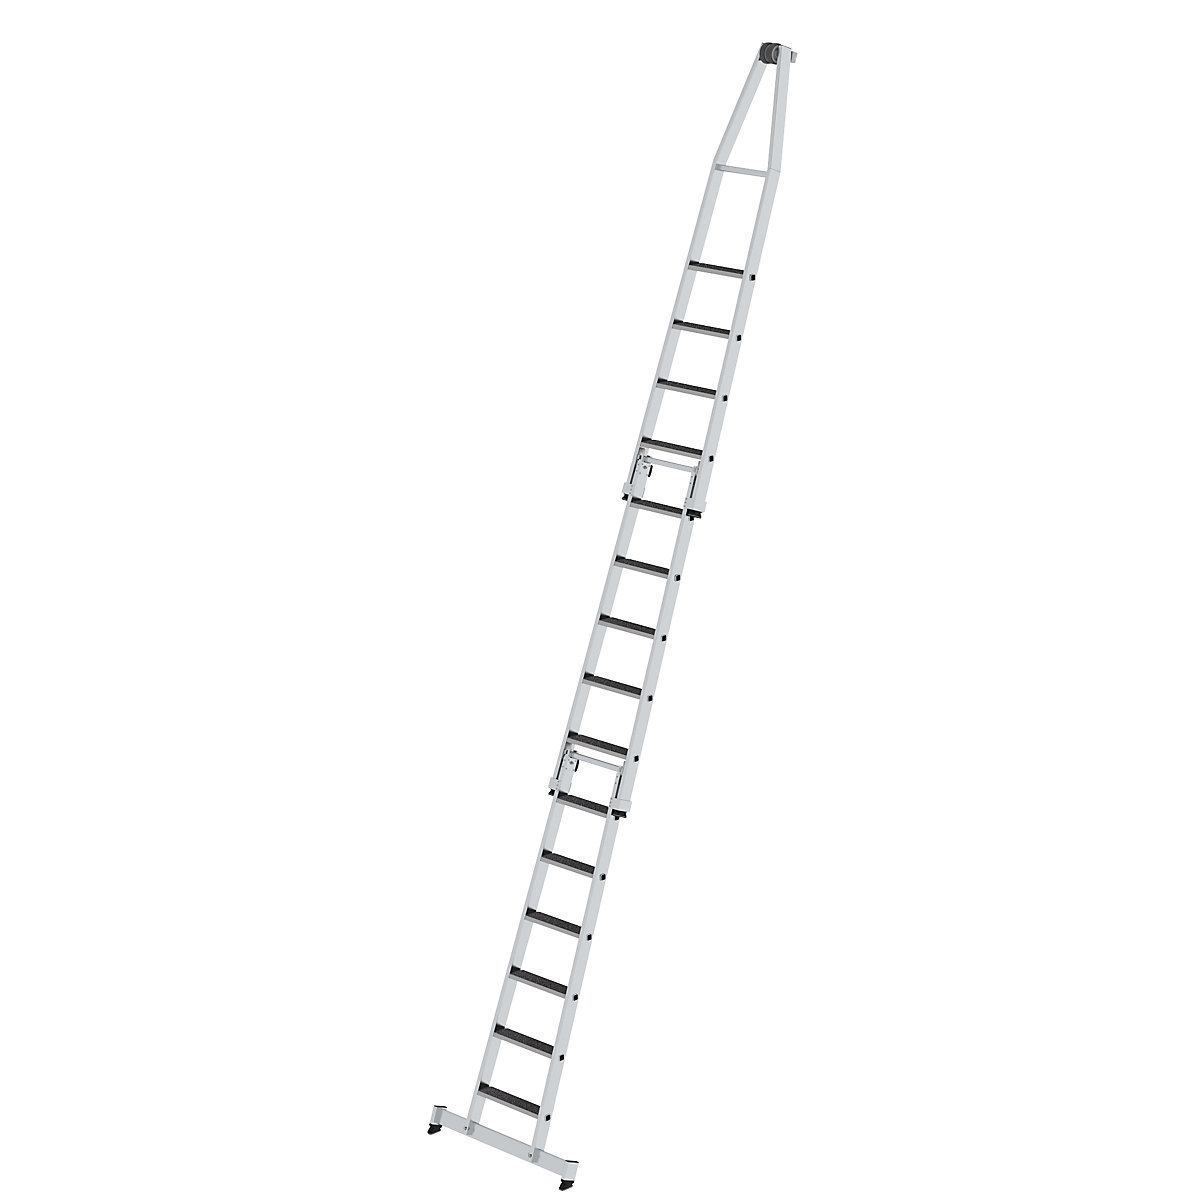 Rebrík so stupňami na čistenie okien – MUNK, s nášľapnou plochou, 3-dielne, 15 stupňov-1